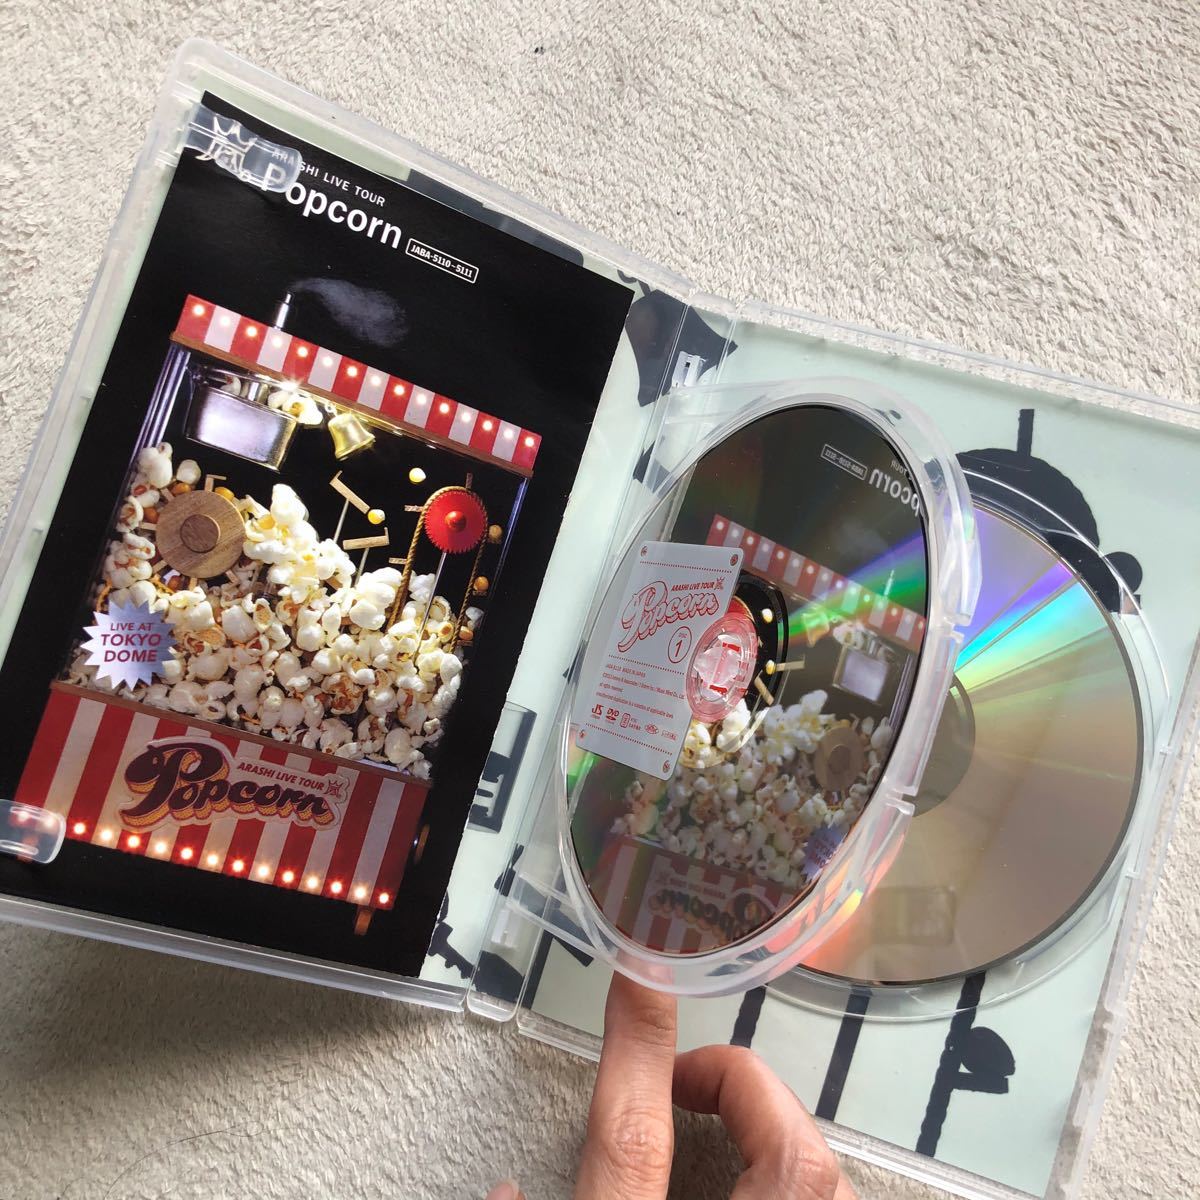 嵐 ARASHI LIVE TOUR Popcorn〈2枚組〉 - ブルーレイ